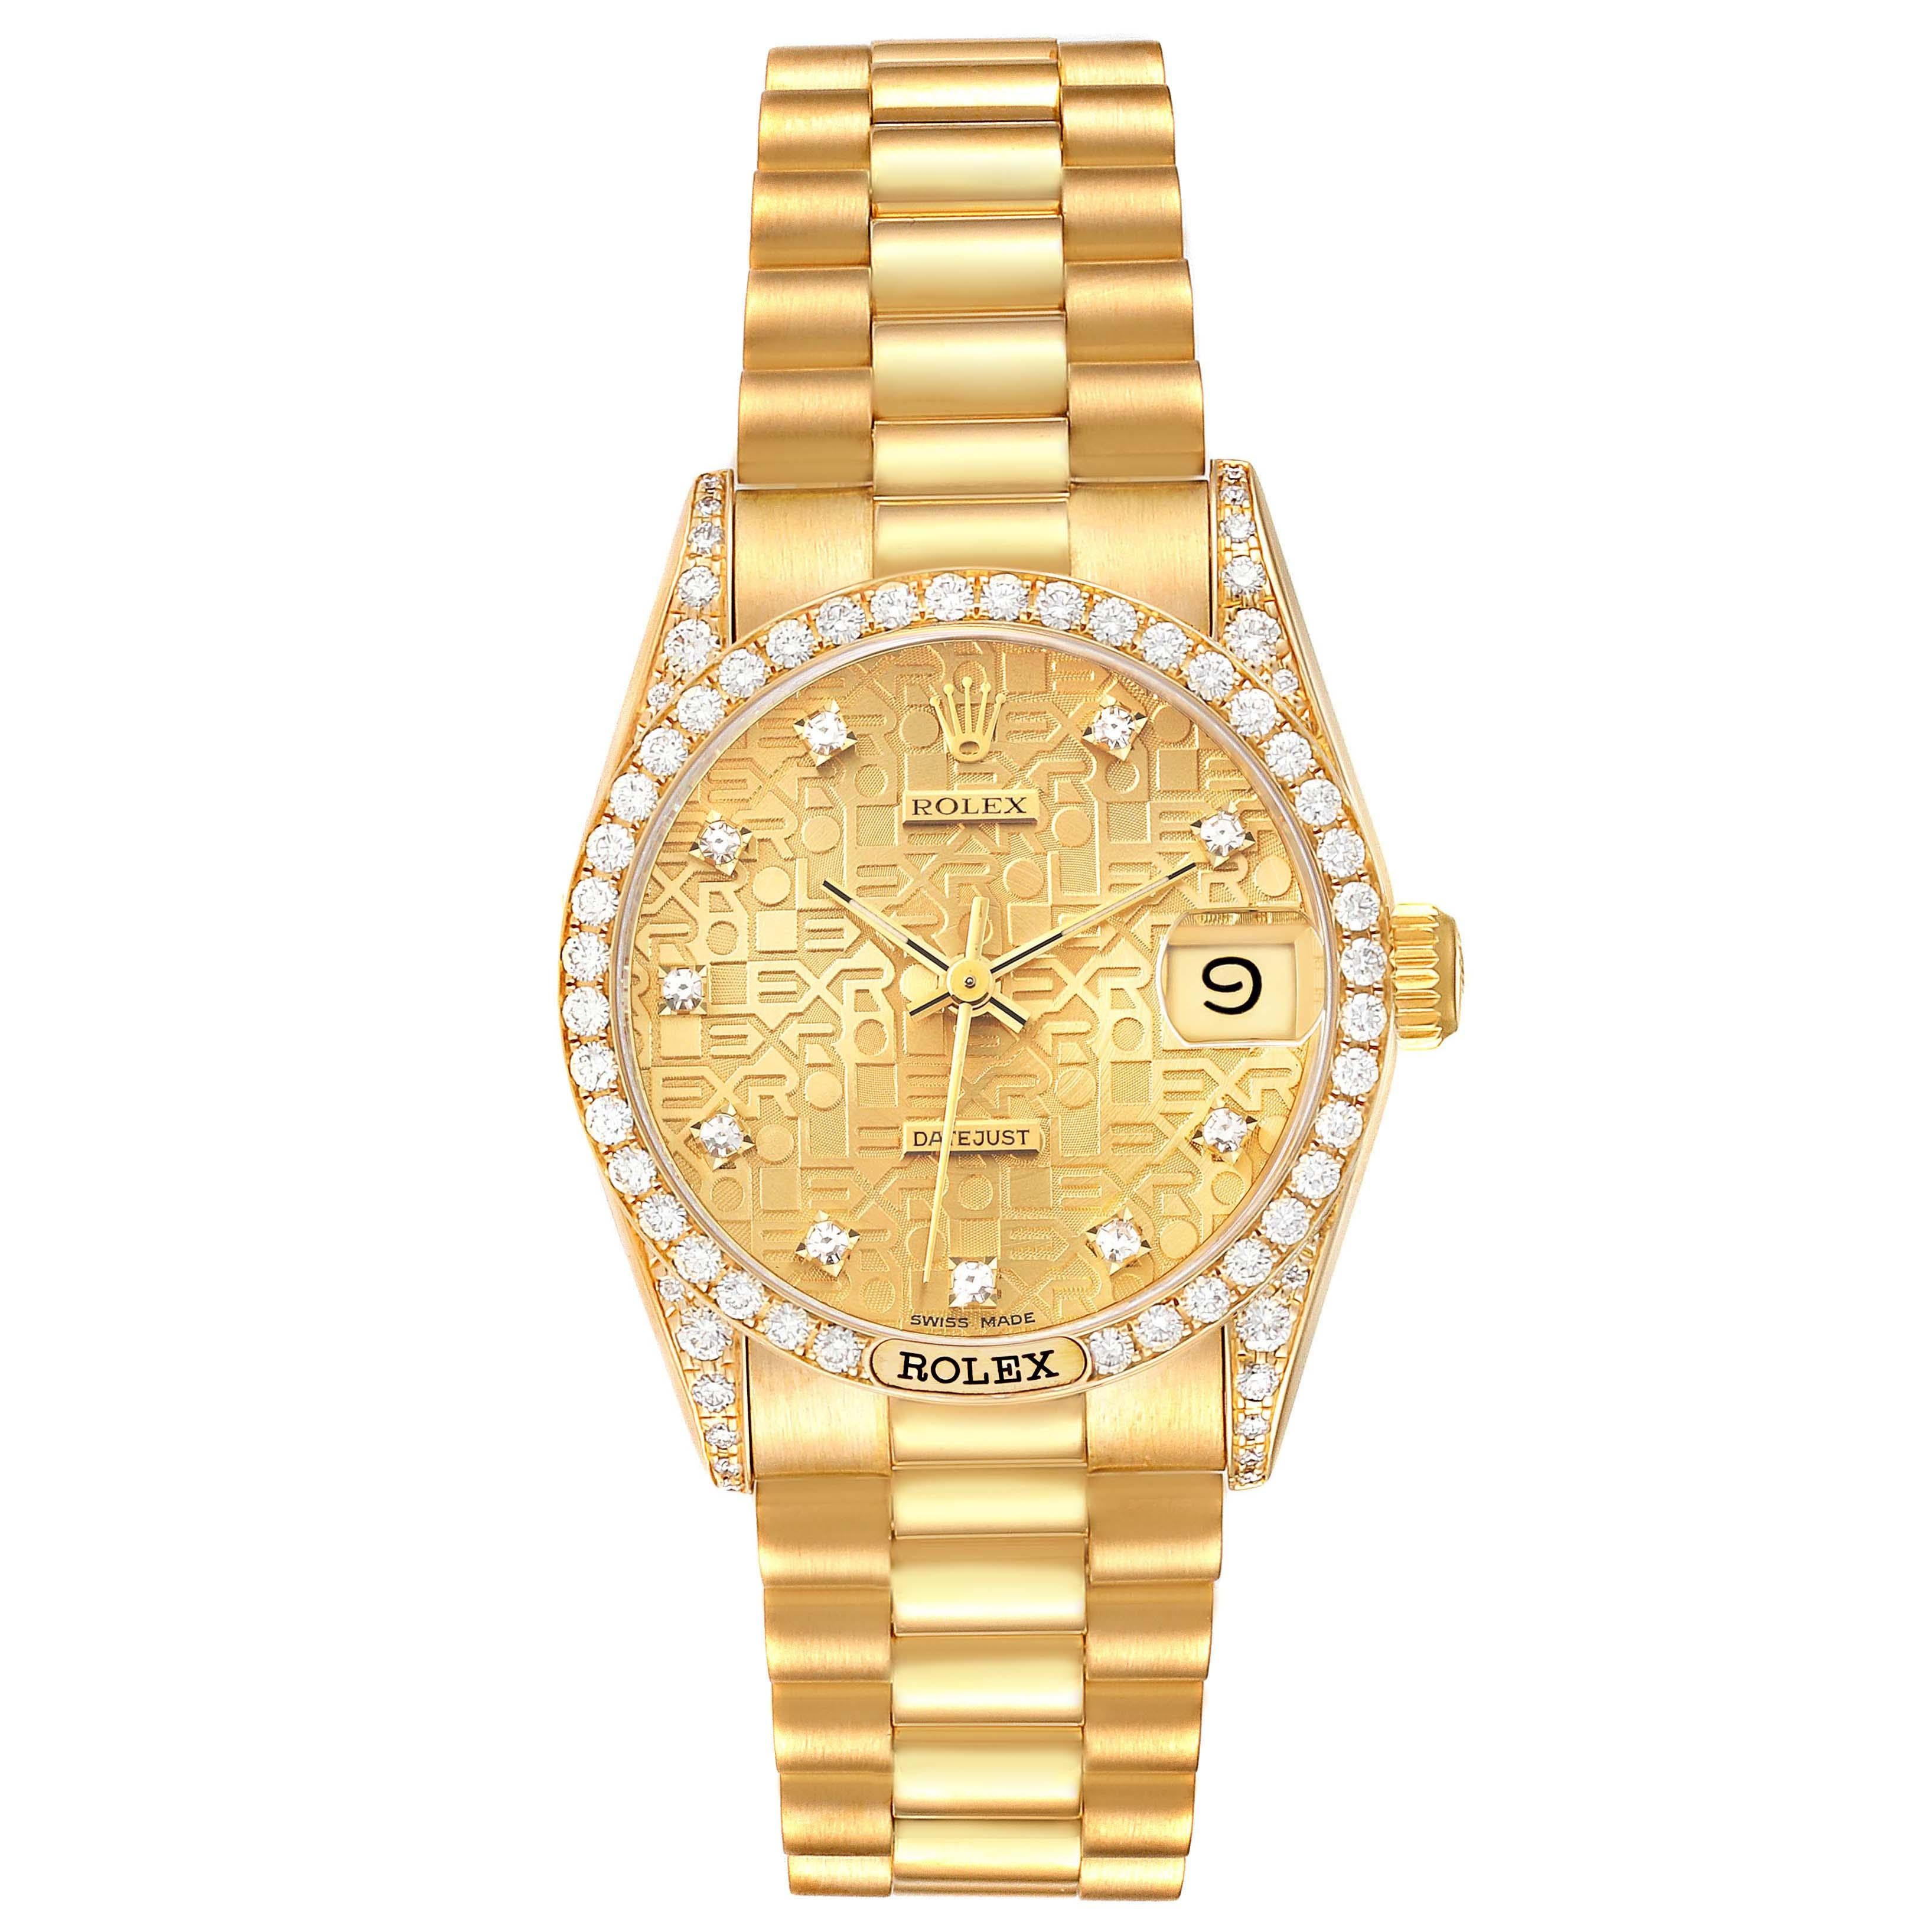 Rolex Datejust President Yellow Gold Anniversary Diamond Dial Ladies Watch 68158. Mouvement à remontage automatique certifié chronomètre. Boîtier en or jaune 18 carats de 31,0 mm de diamètre. Logo Rolex sur la couronne. Lunettes serties de diamants